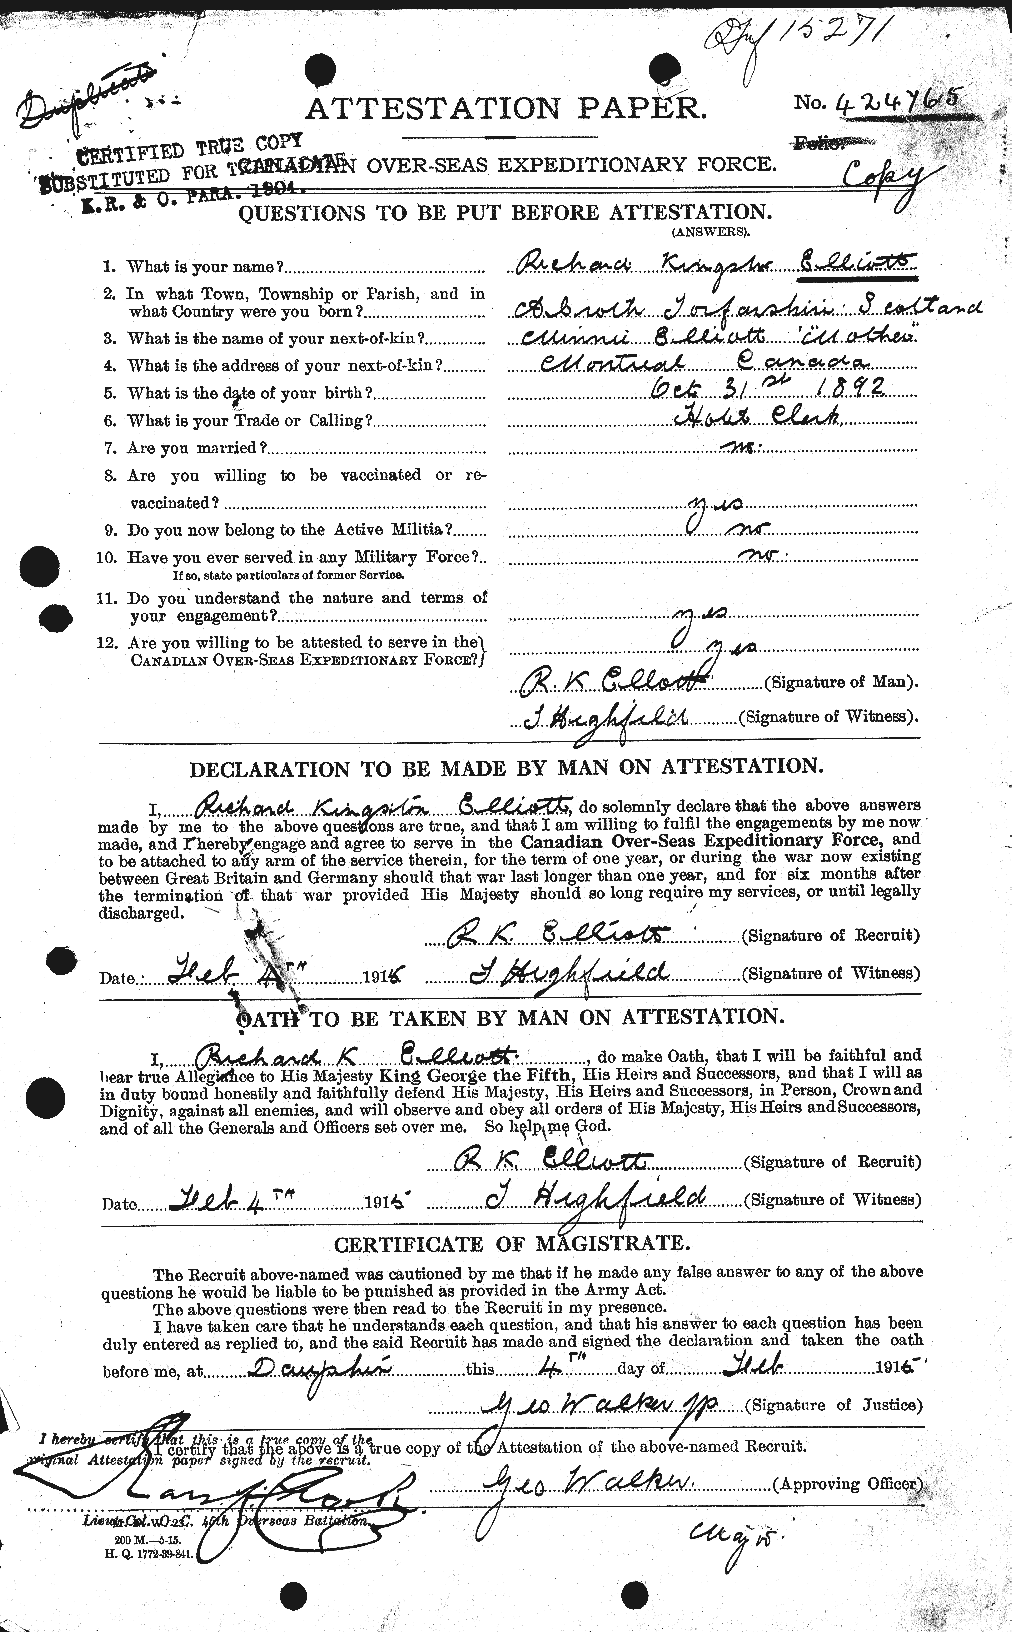 Dossiers du Personnel de la Première Guerre mondiale - CEC 316058a